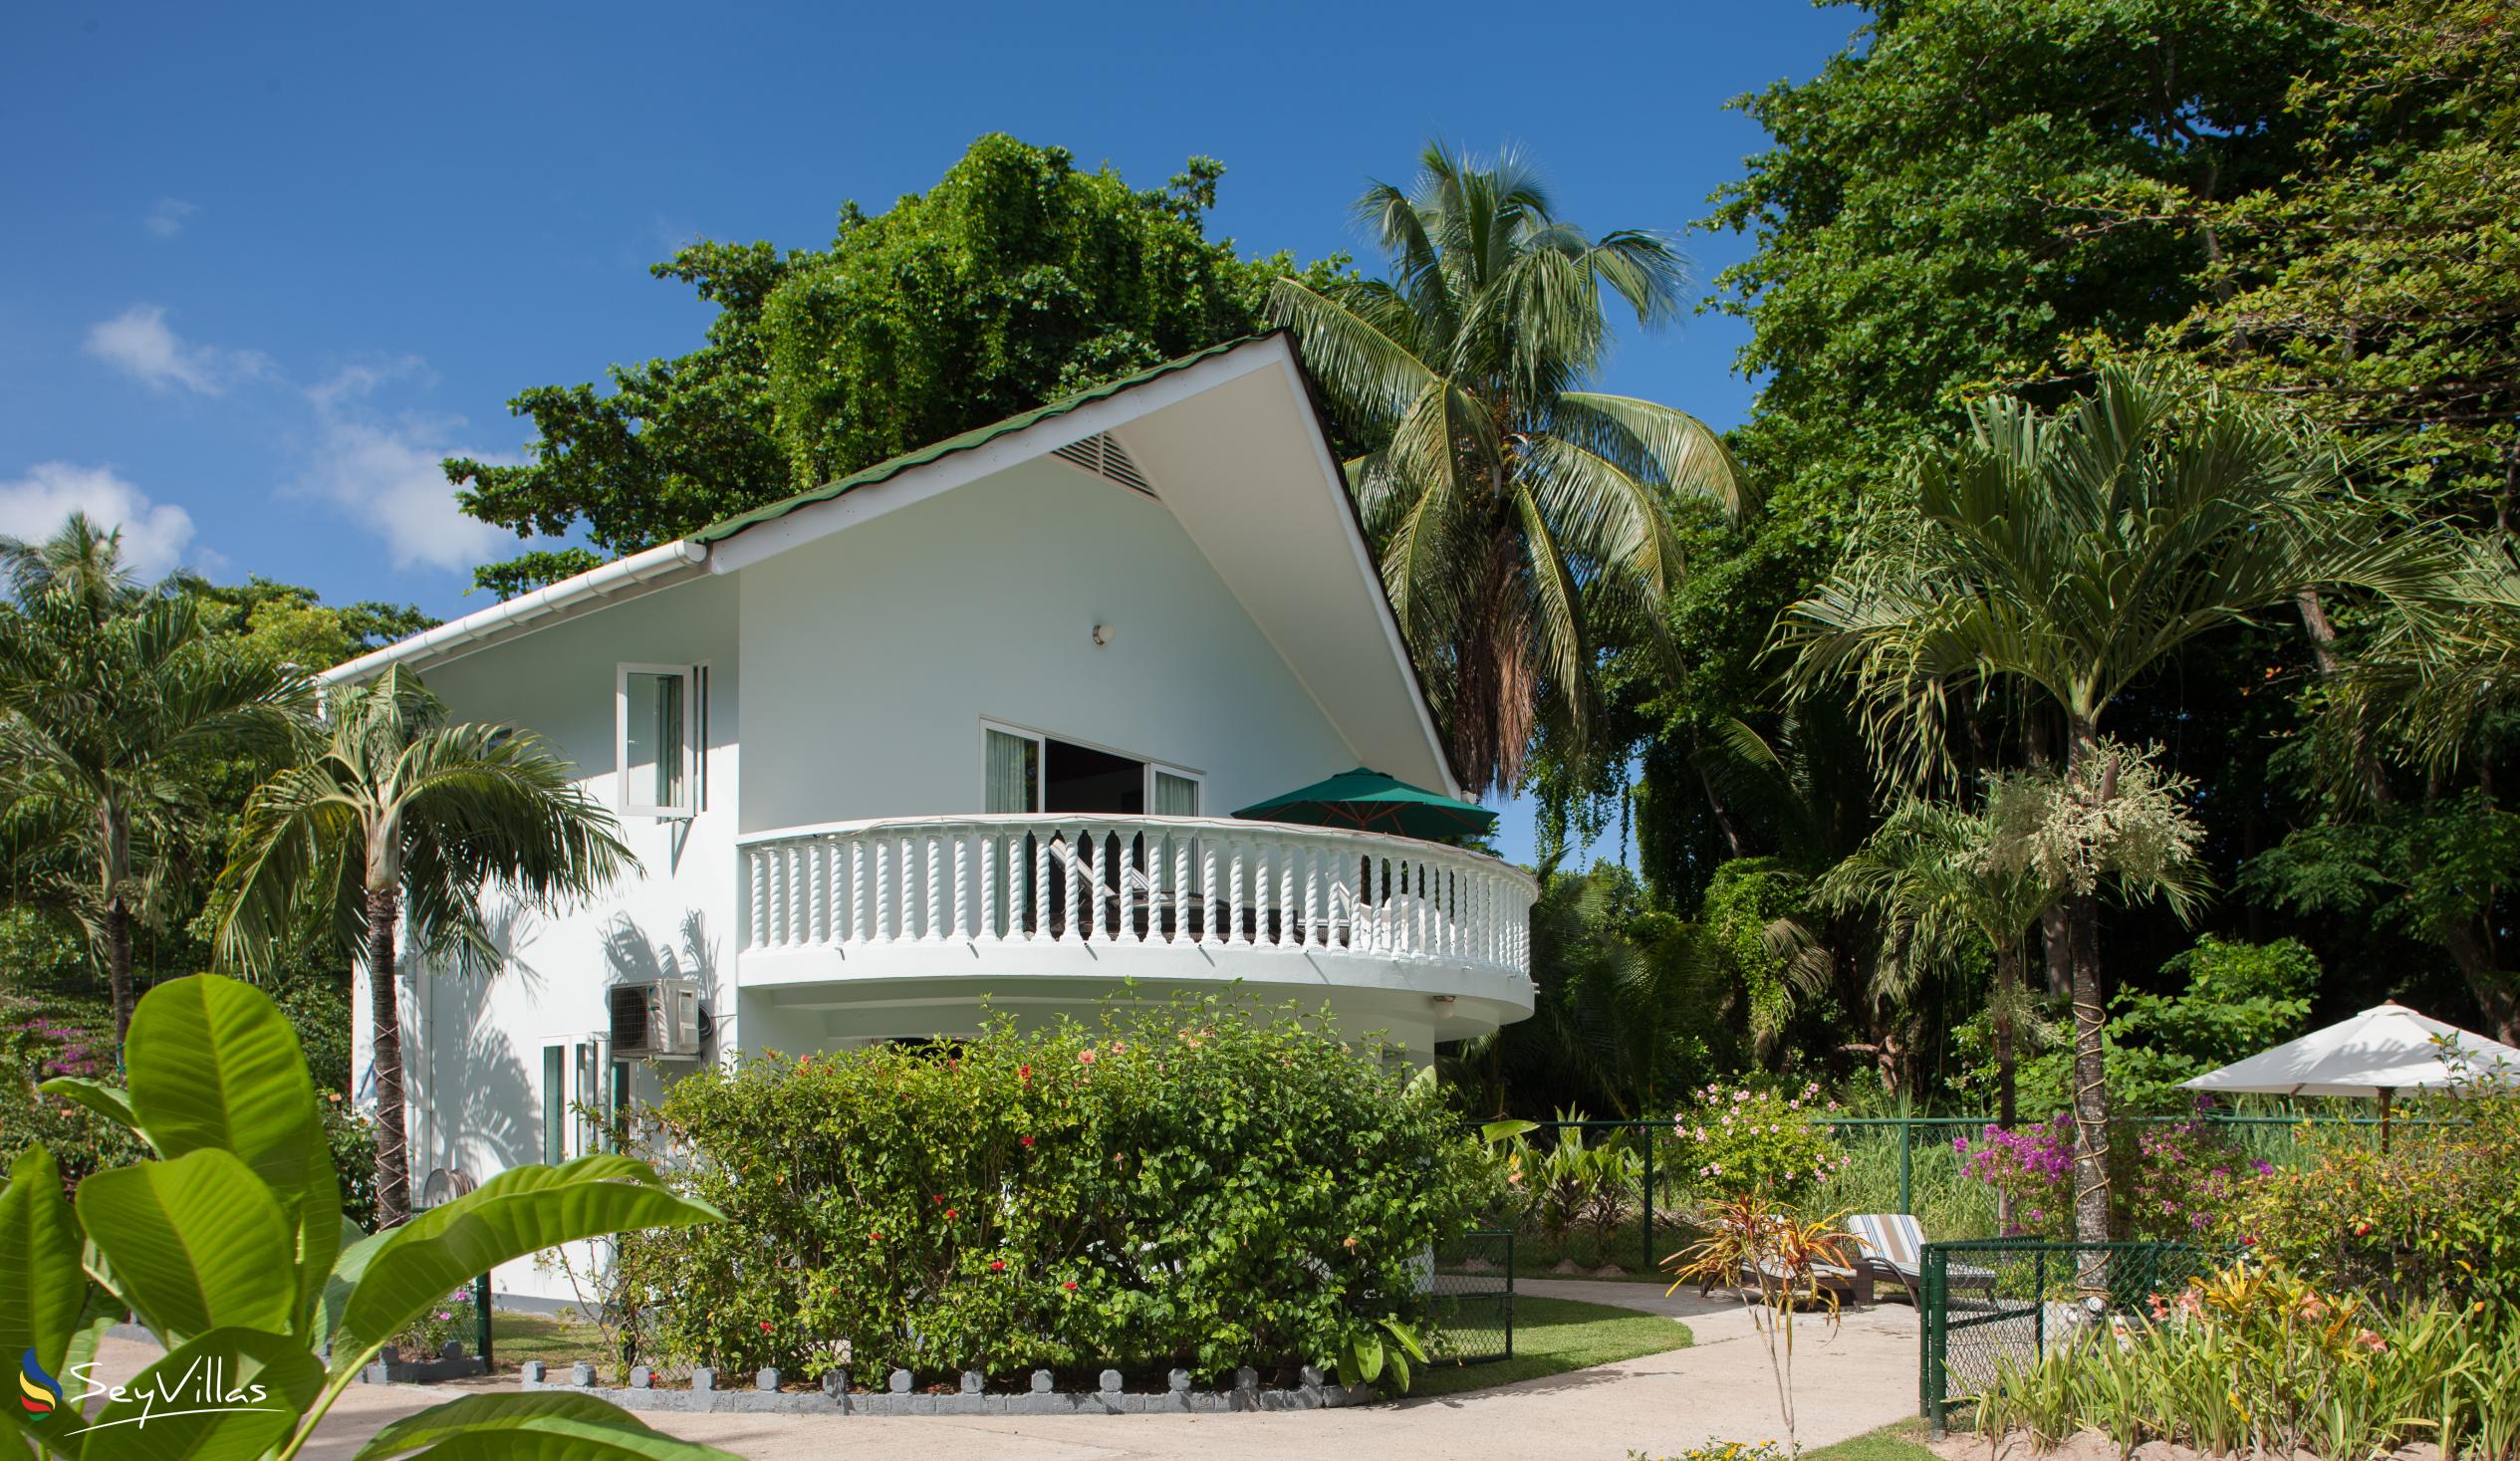 Foto 2: Ocean Villa - Aussenbereich - Praslin (Seychellen)